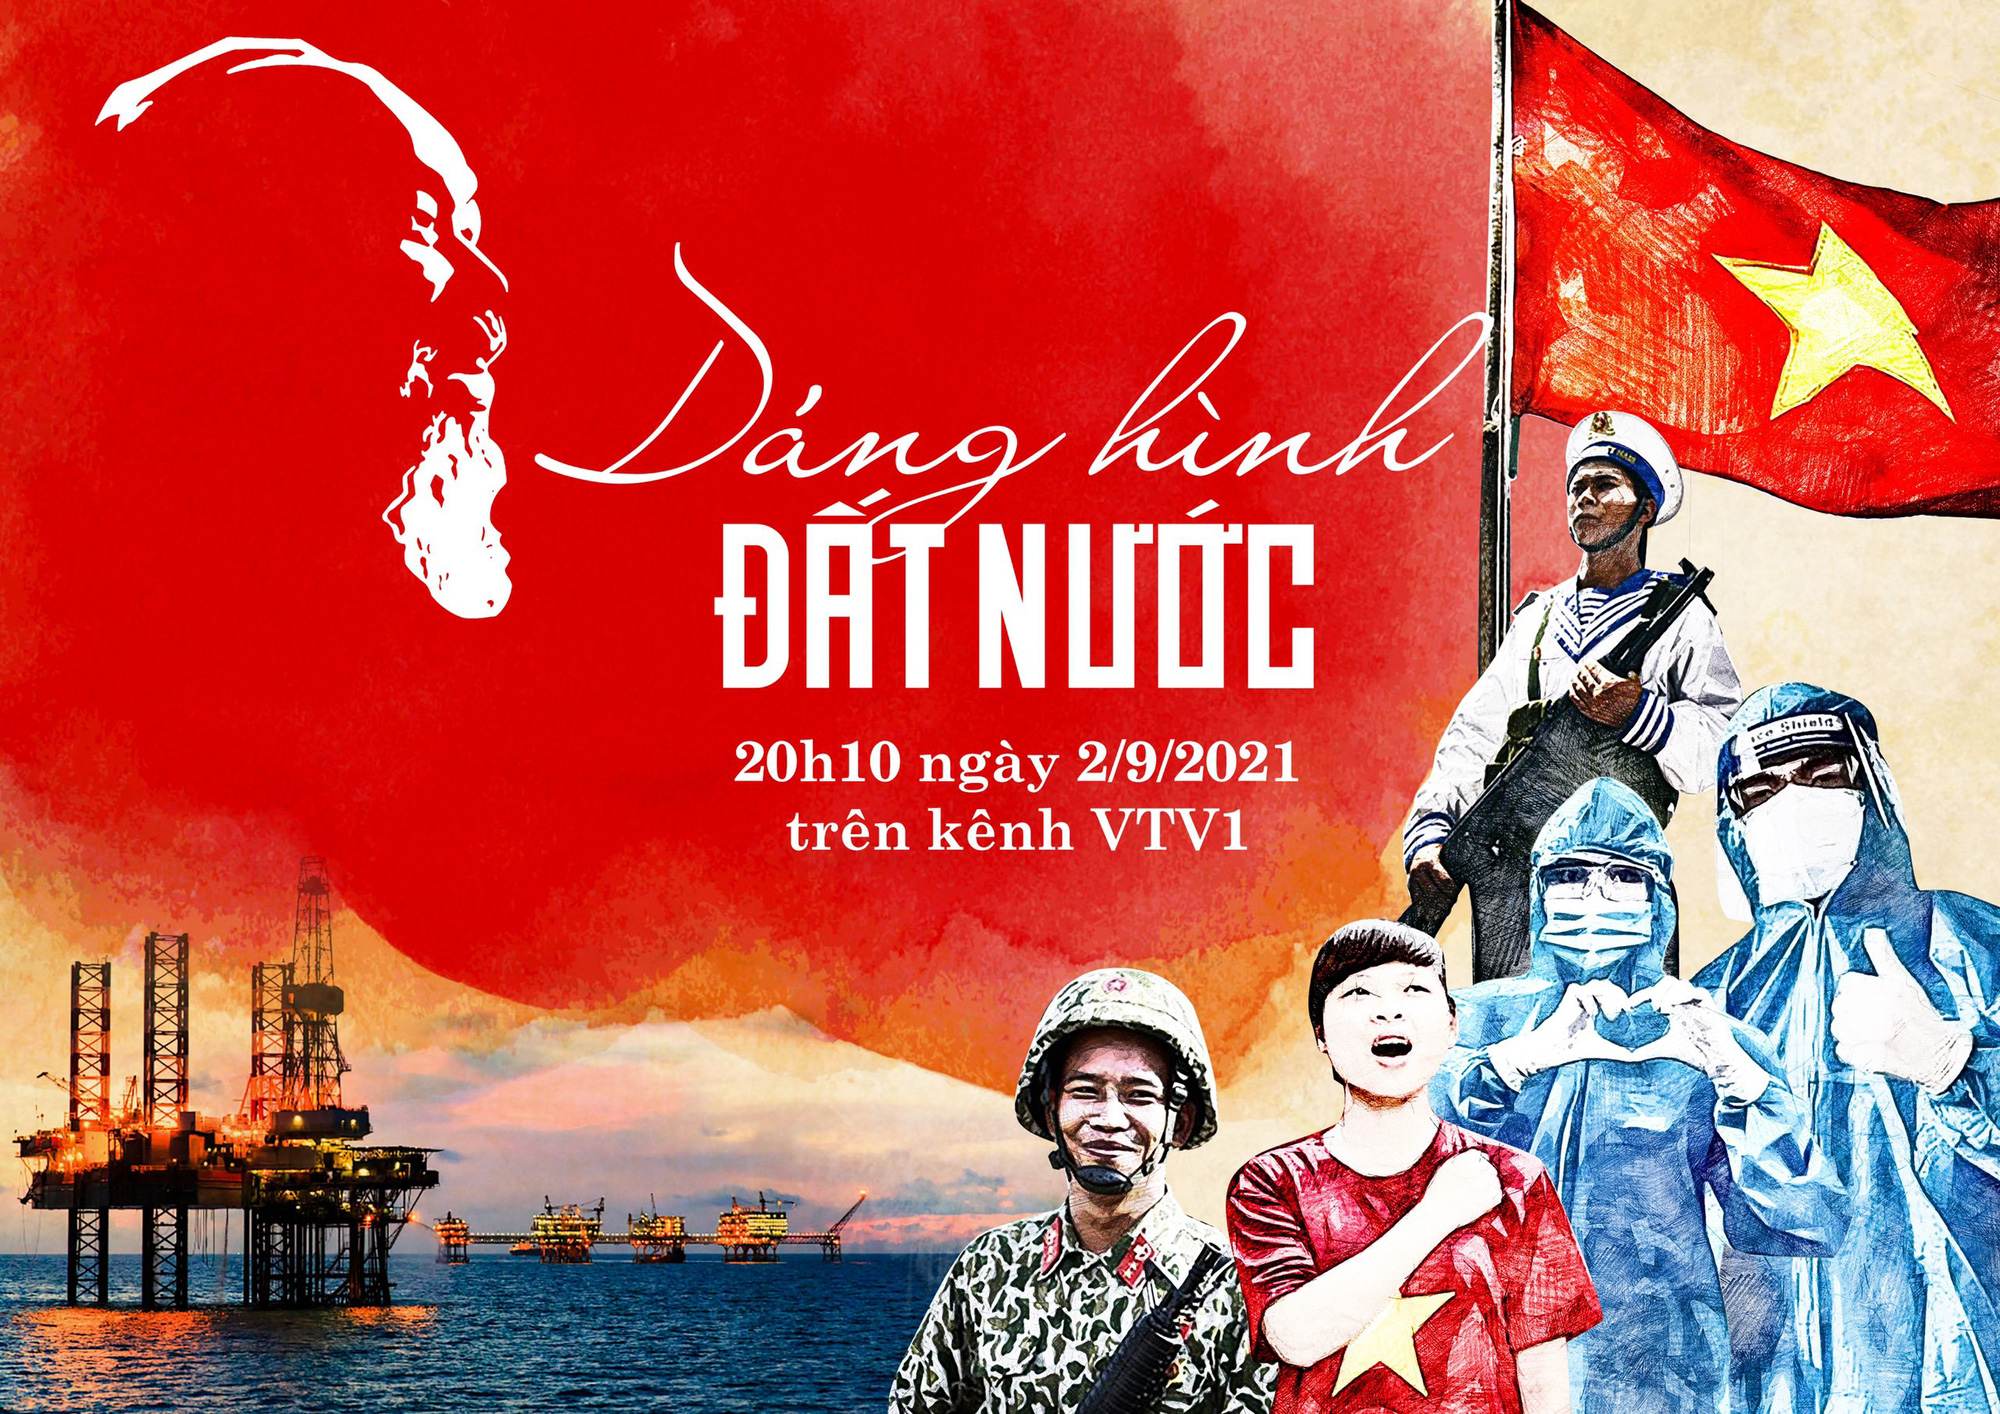 Các dáng hình đất nước, nghệ thuật và lịch sử đều mang trong mình một sức hút đặc biệt. Hãy bấm play để thưởng thức hình ảnh về những kiệt tác nghệ thuật, những di sản lịch sử và đất nước Việt Nam tuyệt đẹp trong từng khung hình.